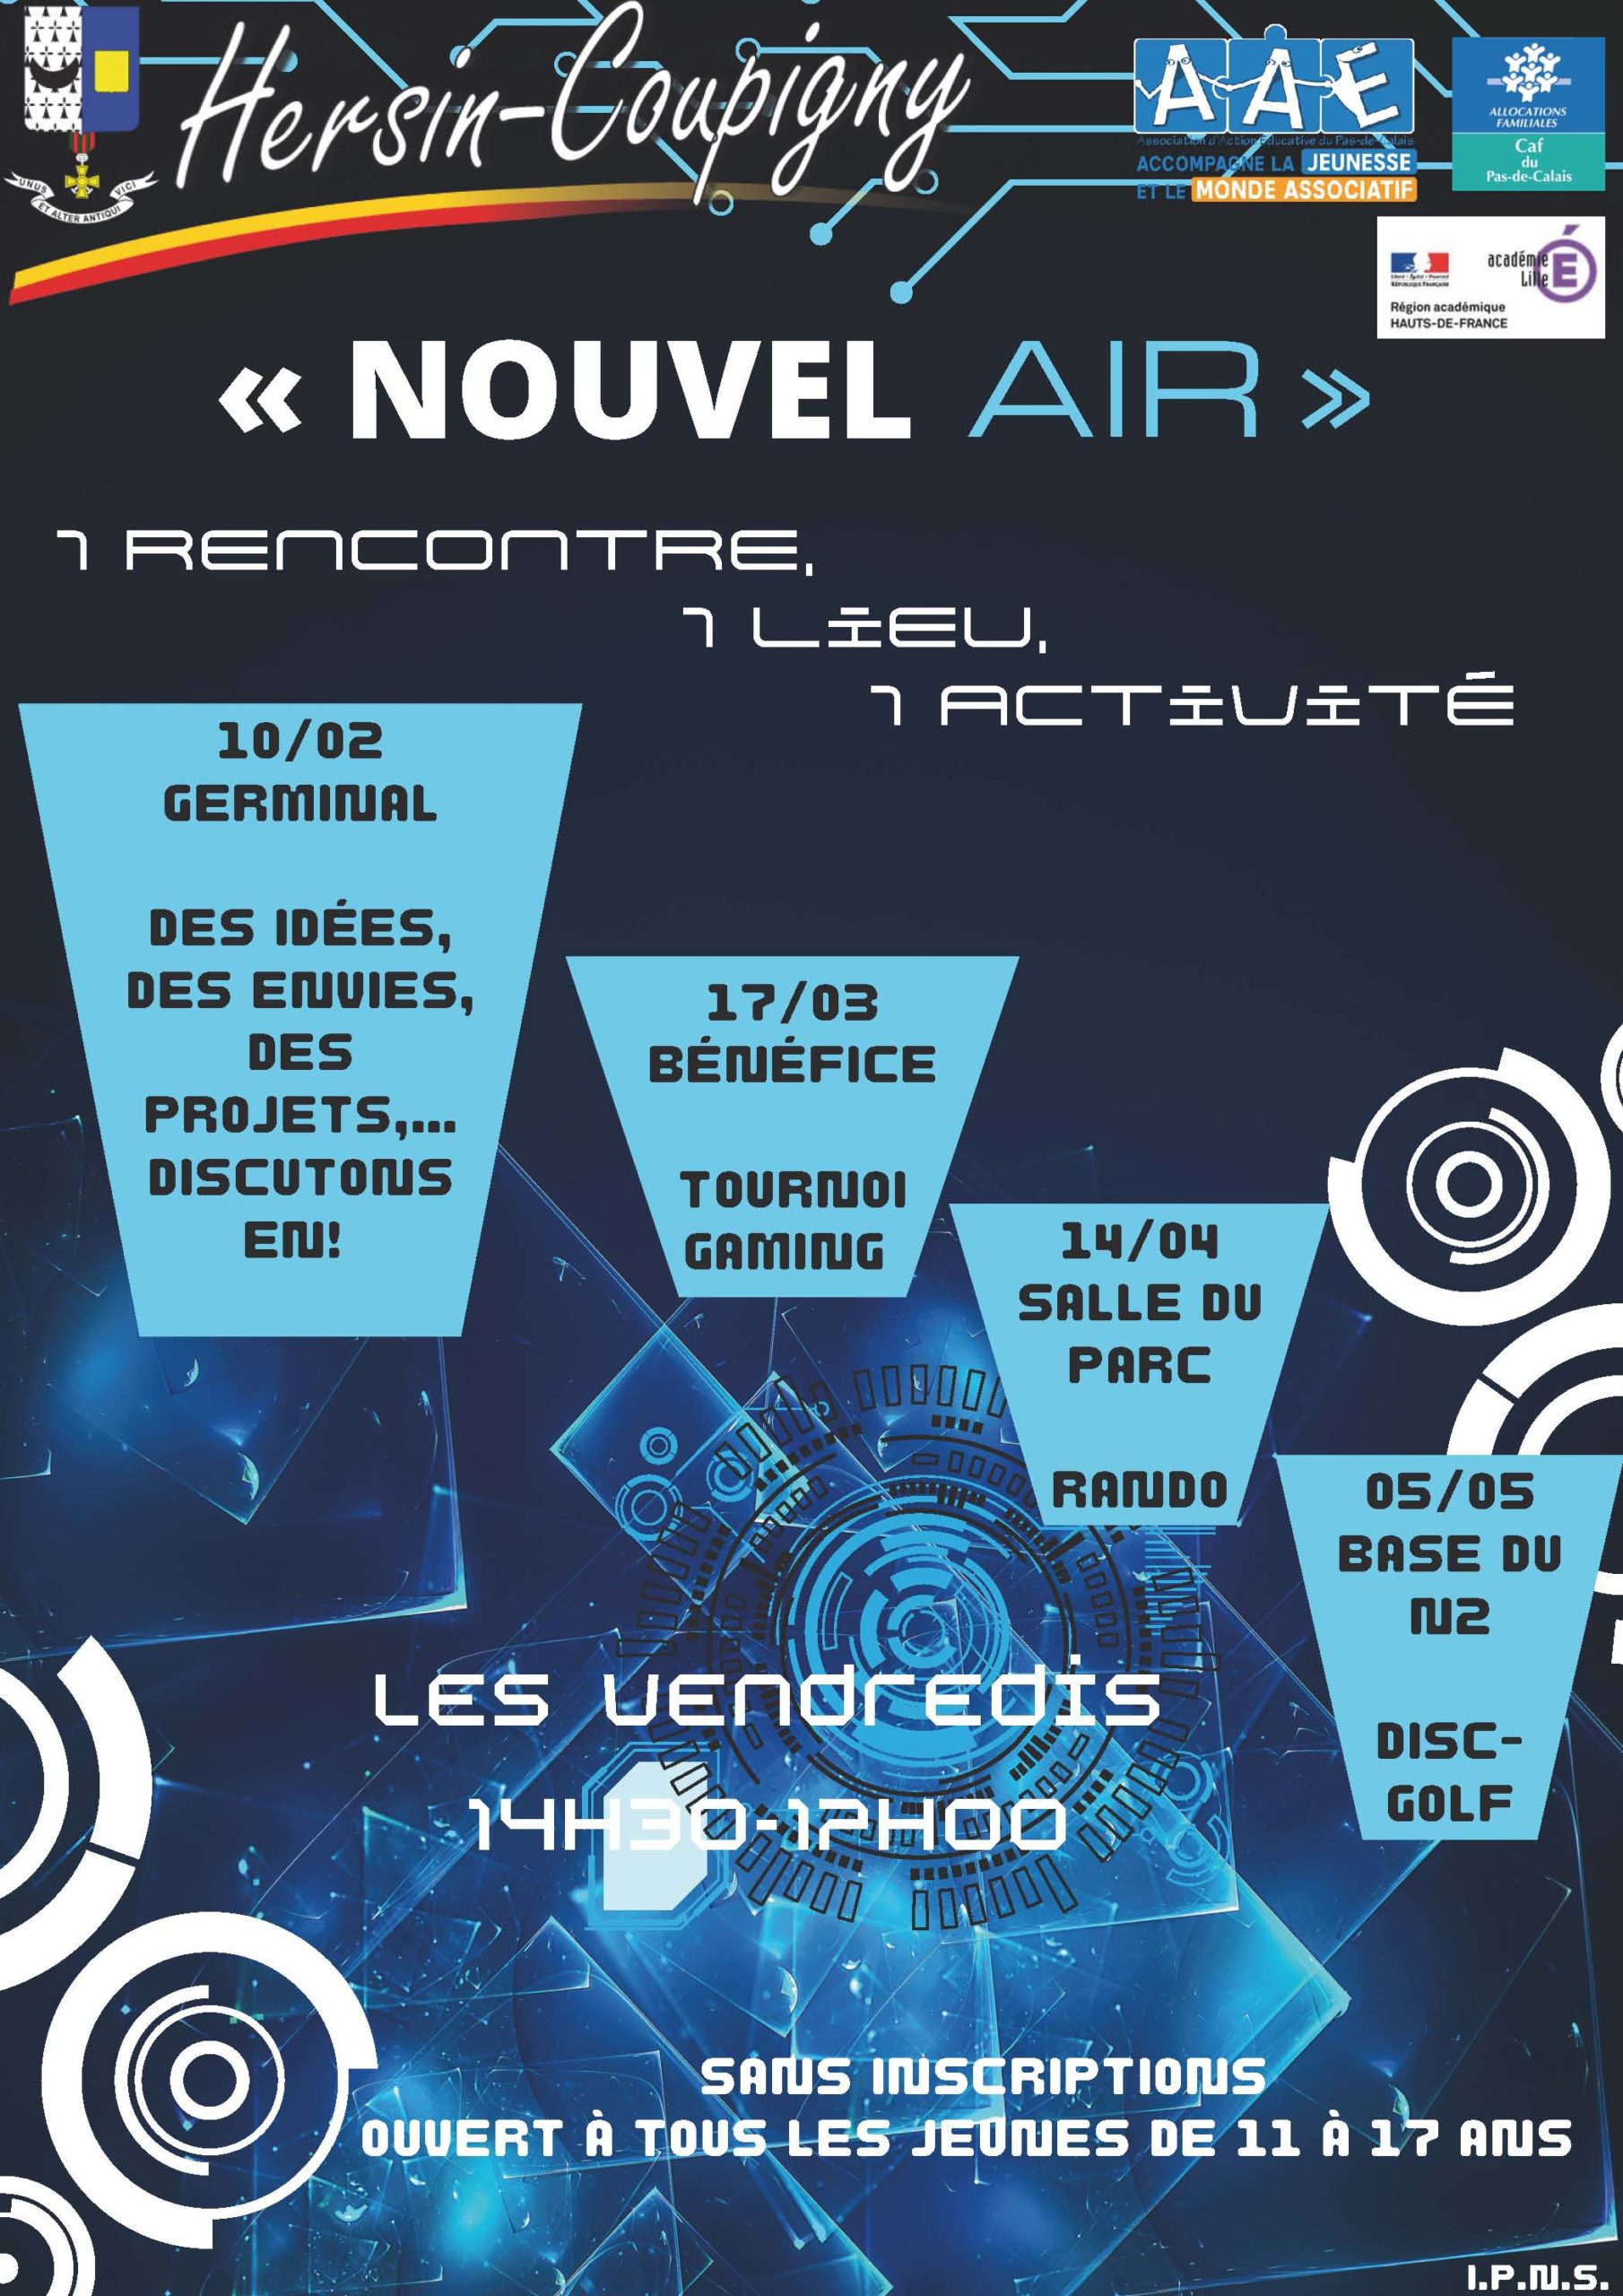 Nouvel Air : des idées, des envies, des projets... Discutons en. @ Germinal | Hersin-Coupigny | Hauts-de-France | France